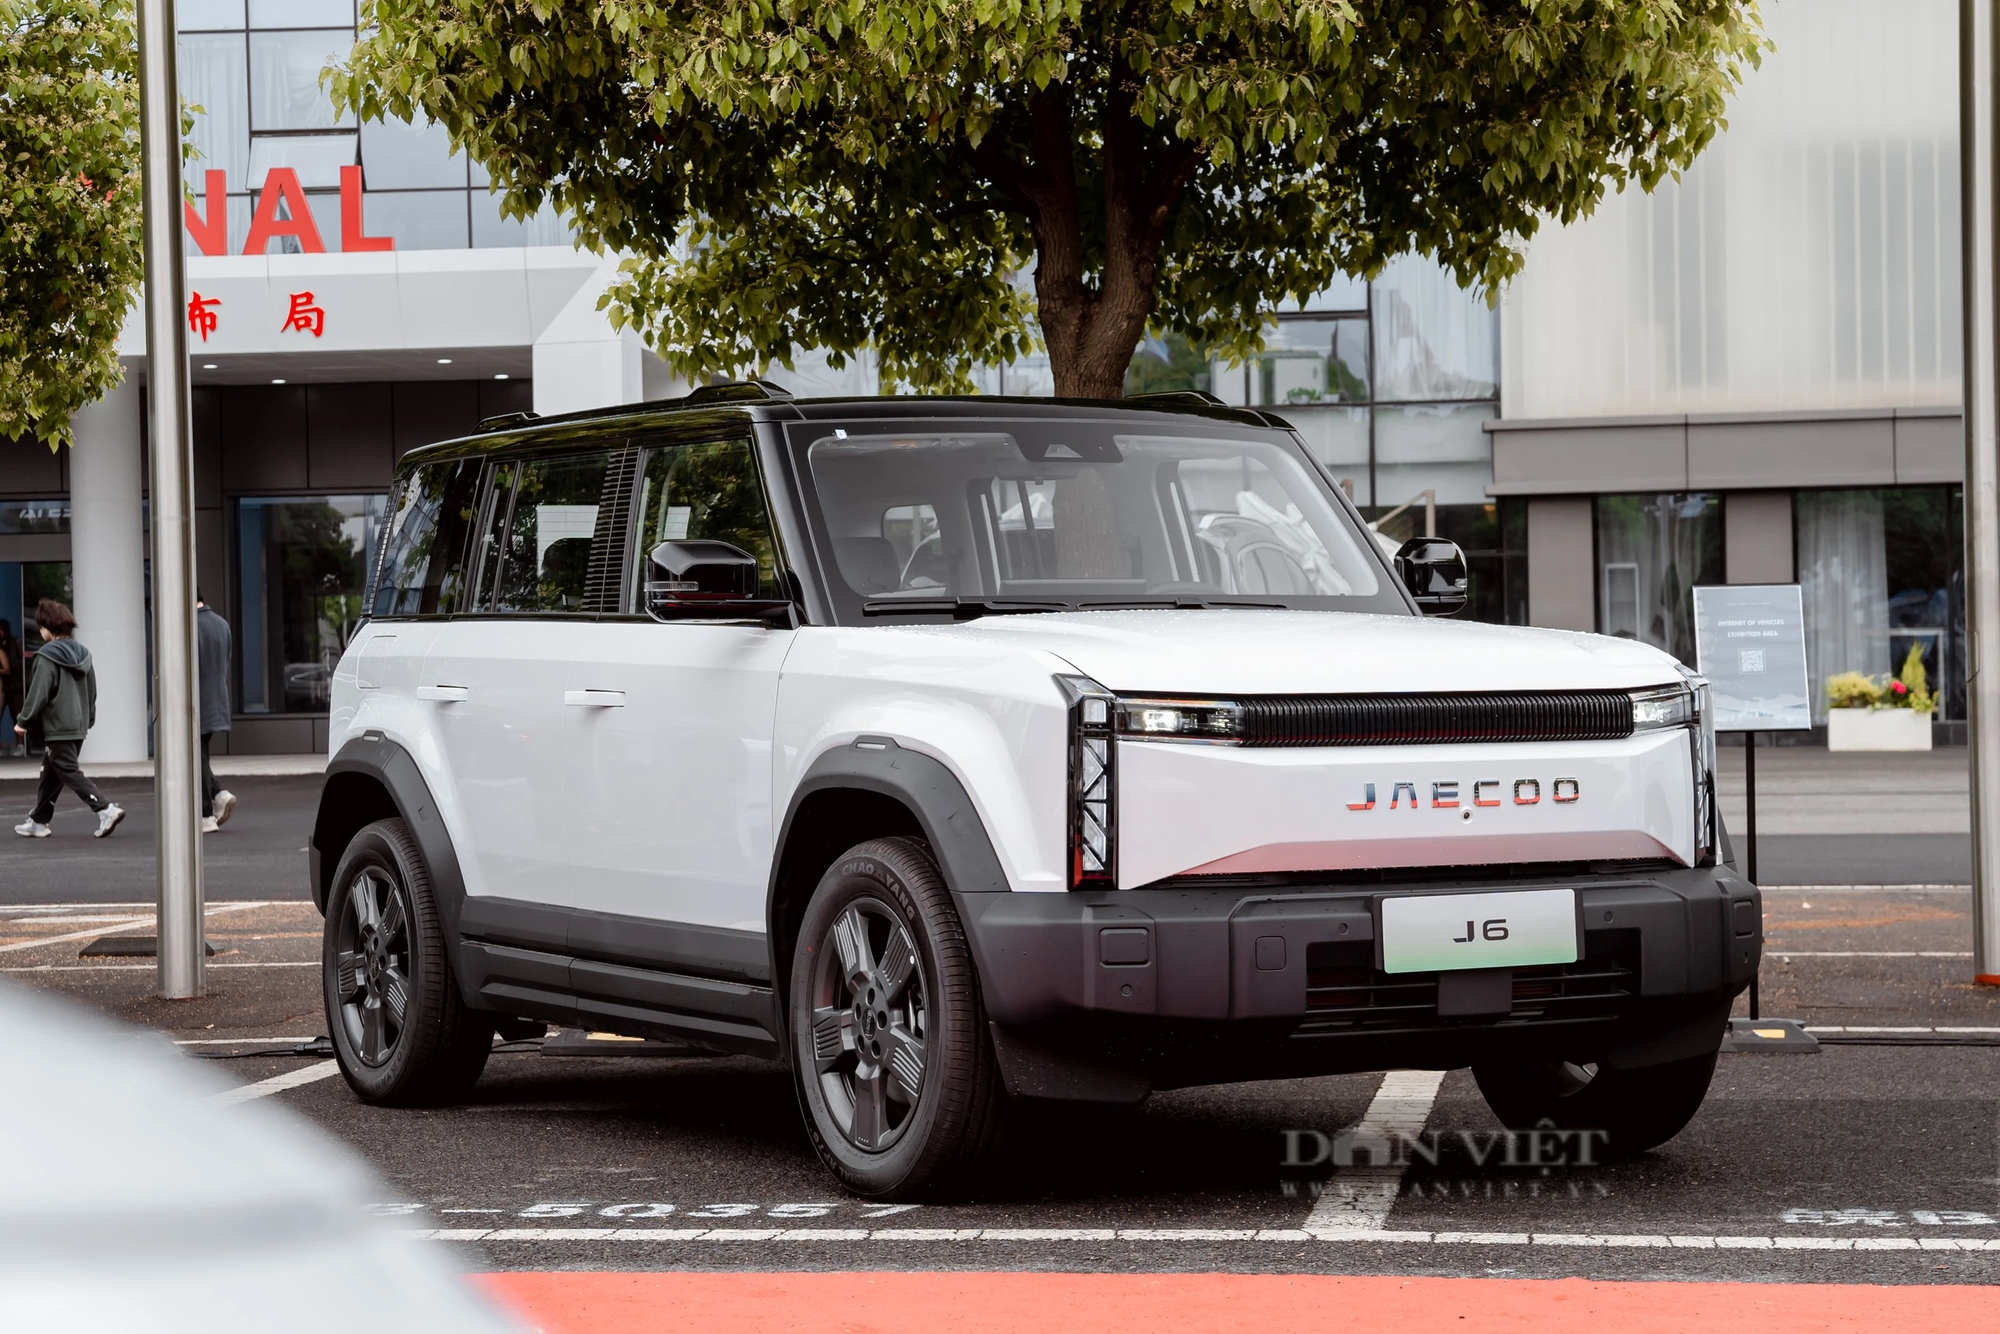 Trải nghiệm Jaecoo J6 sắp bán ở Việt Nam: SUV off-road chạy điện đầy hiện đại, đua tranh Suzuki Jimny- Ảnh 3.